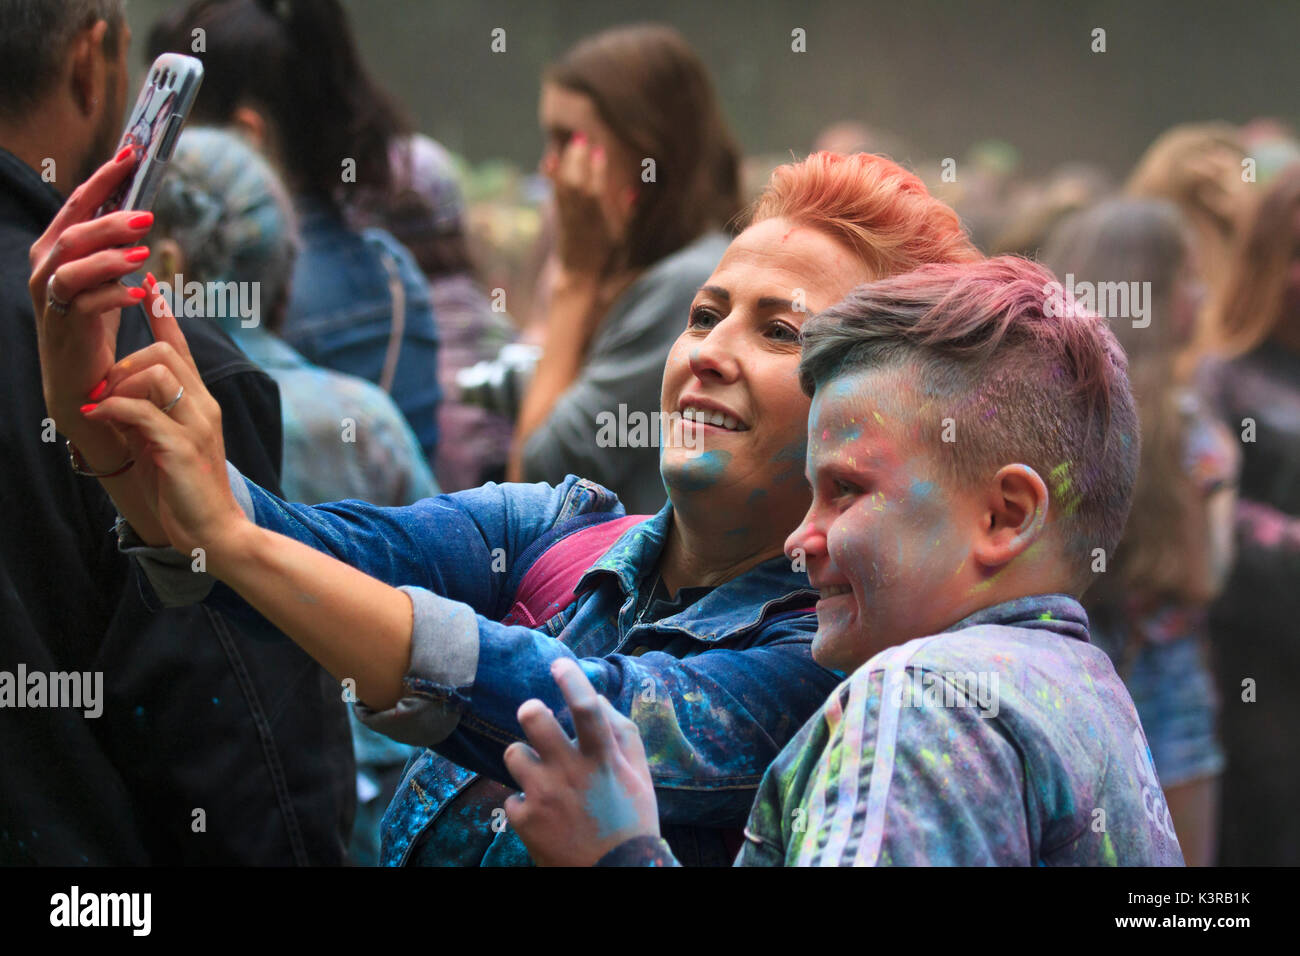 Lächelnd, glücklich Menschen unter selfie Fotos während Holi Festival der Farben. Cieszyn. Polen. Stockfoto